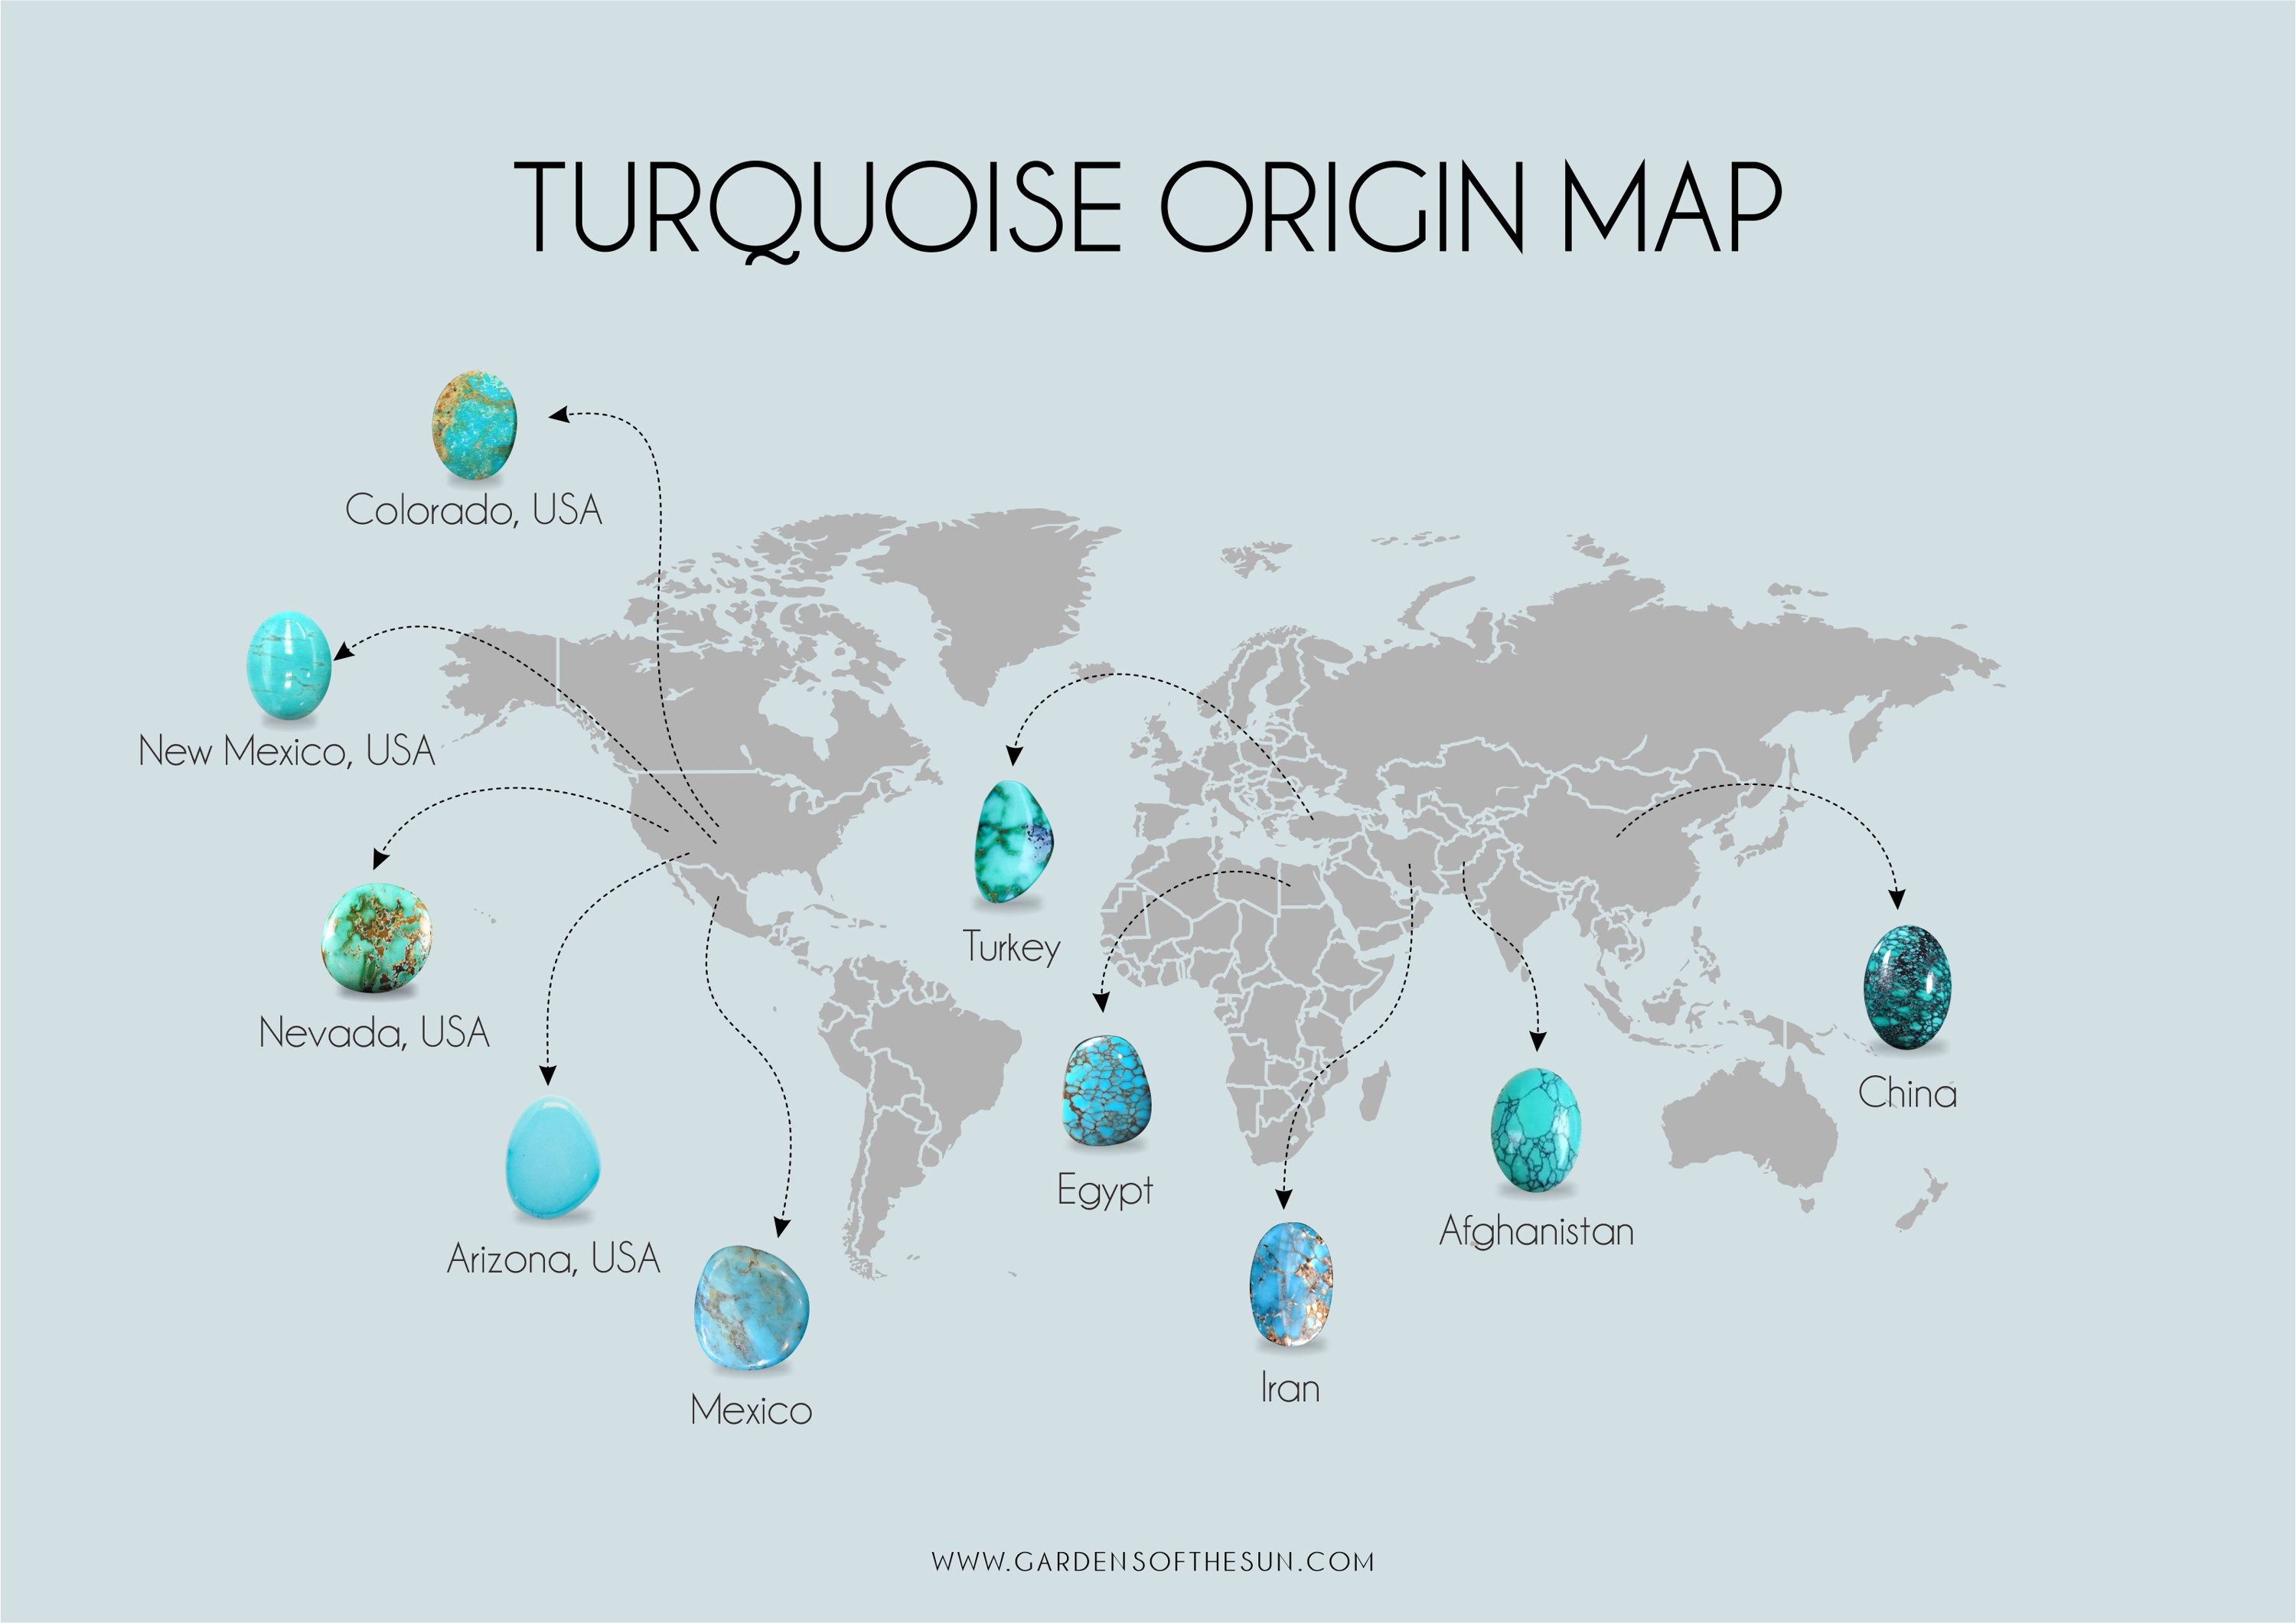 Turquoise origin map